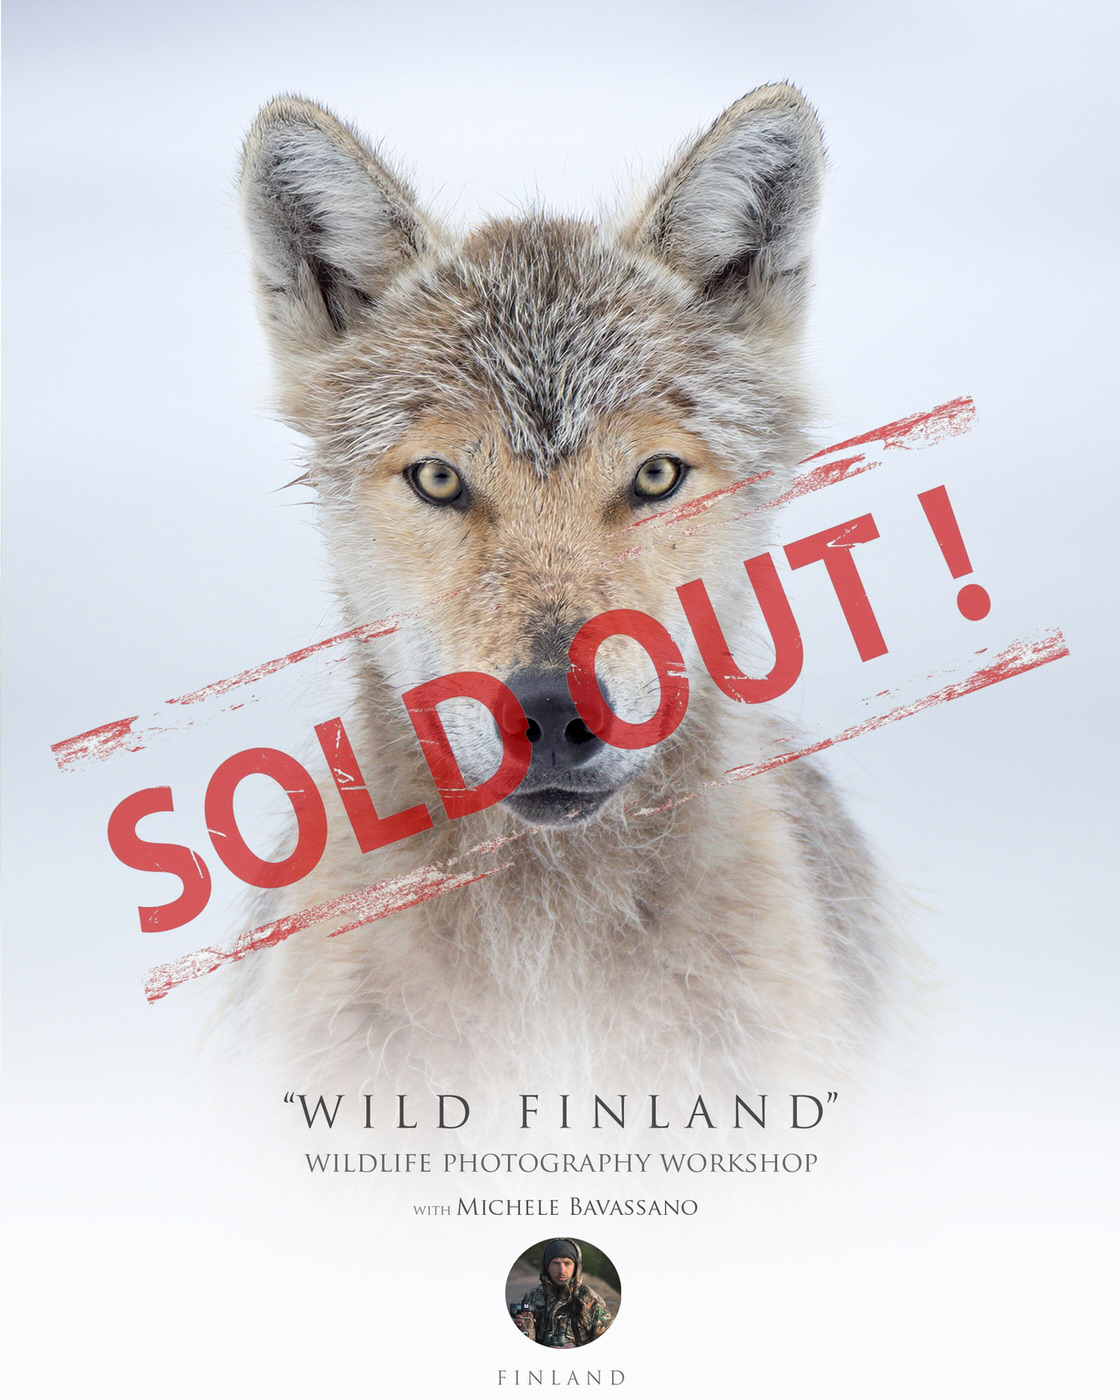 wild finland - workshop wildlife